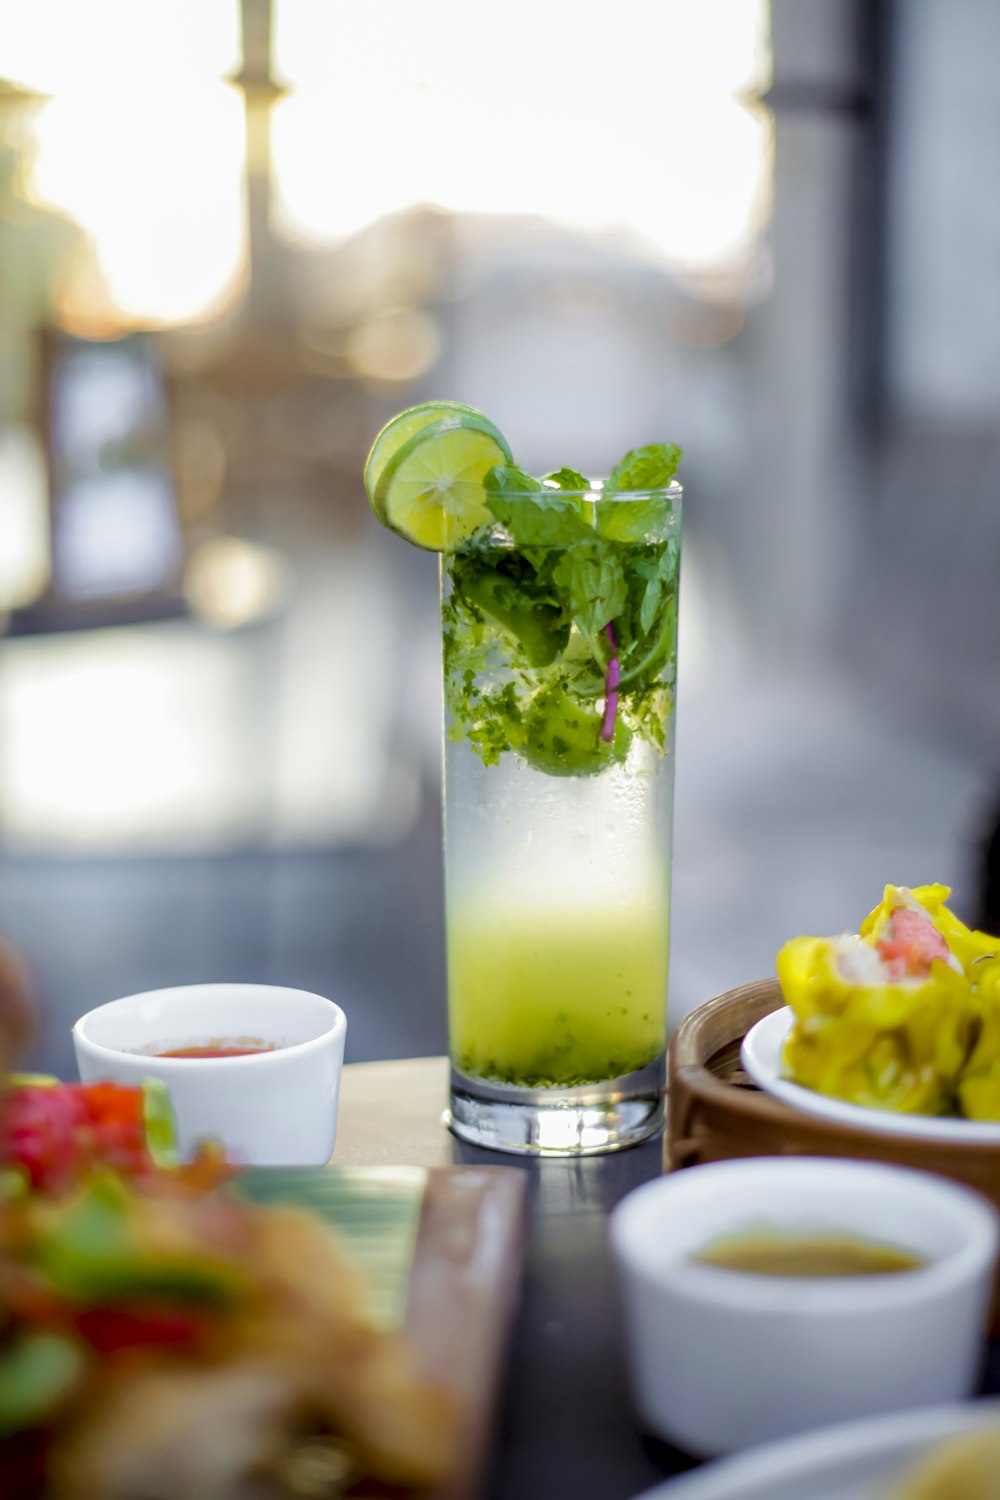 ein Glas gefüllt mit einem grünen Getränk neben einem Teller mit Essen